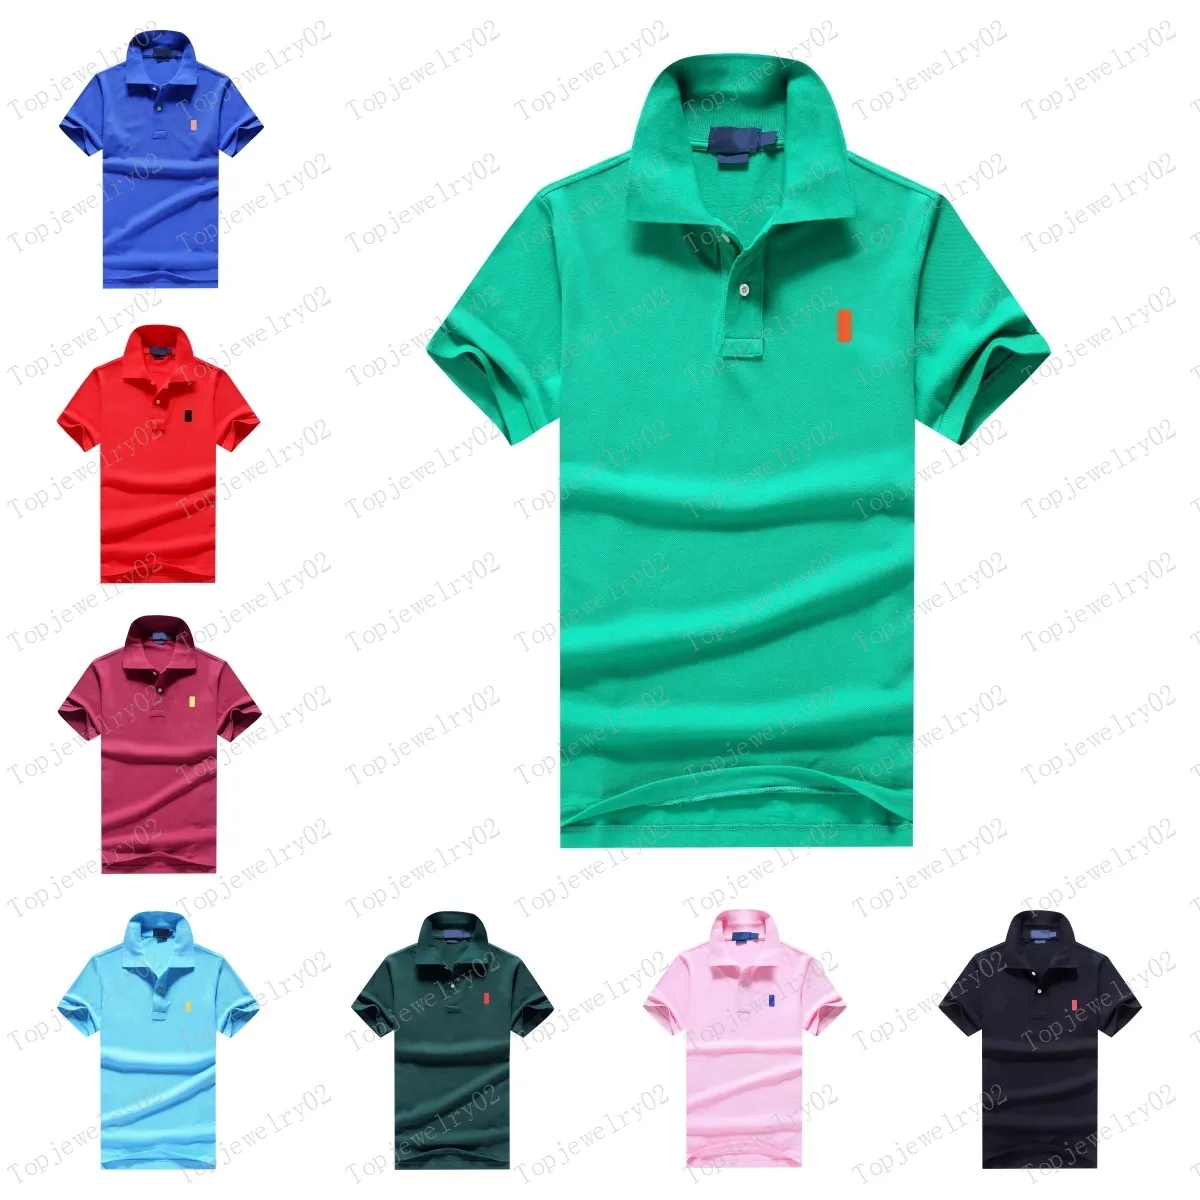 BRAQUE DE QUALITÉ Collier debout Coton Broiderie Polo Shirts Tracks Suit's Polo-Shirts Cormeau de créateur Men's Men's Polo Fashion Shirt